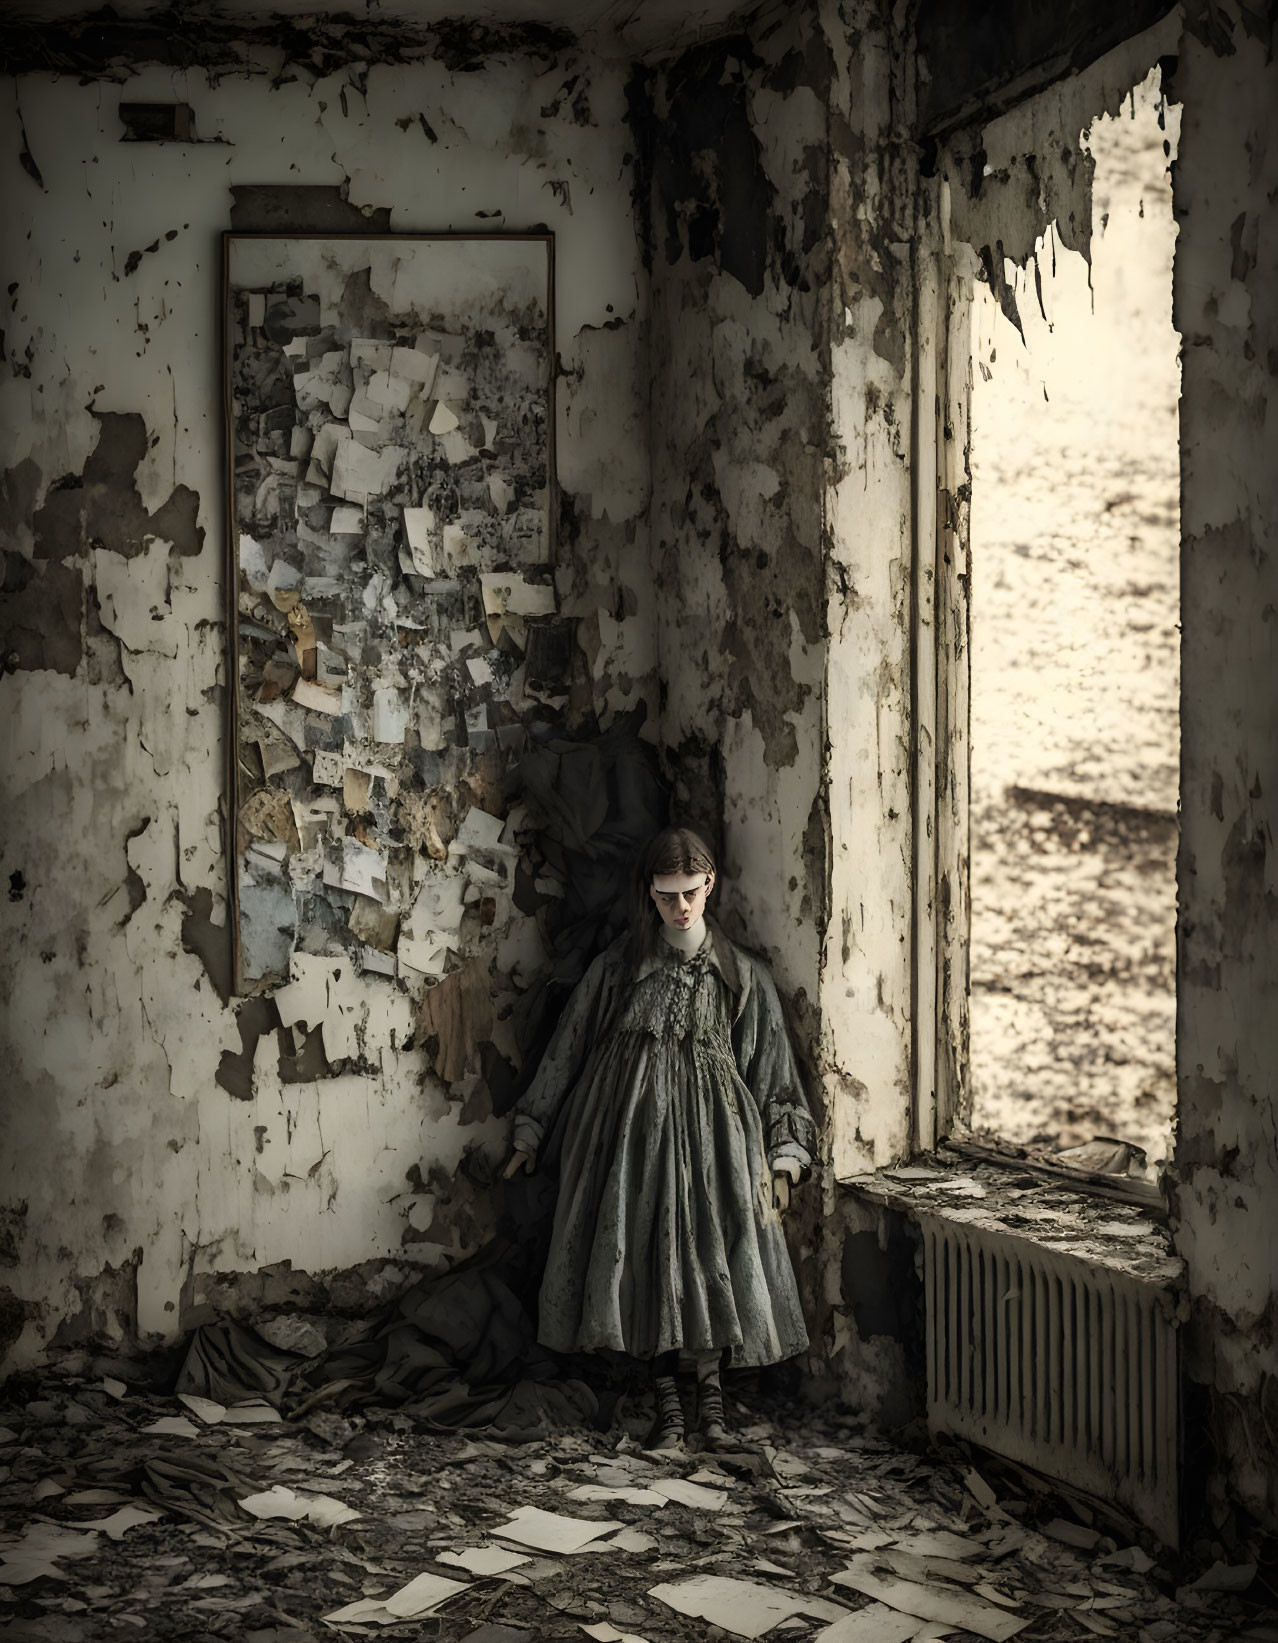 Vintage-dressed girl in dilapidated room near barren landscape